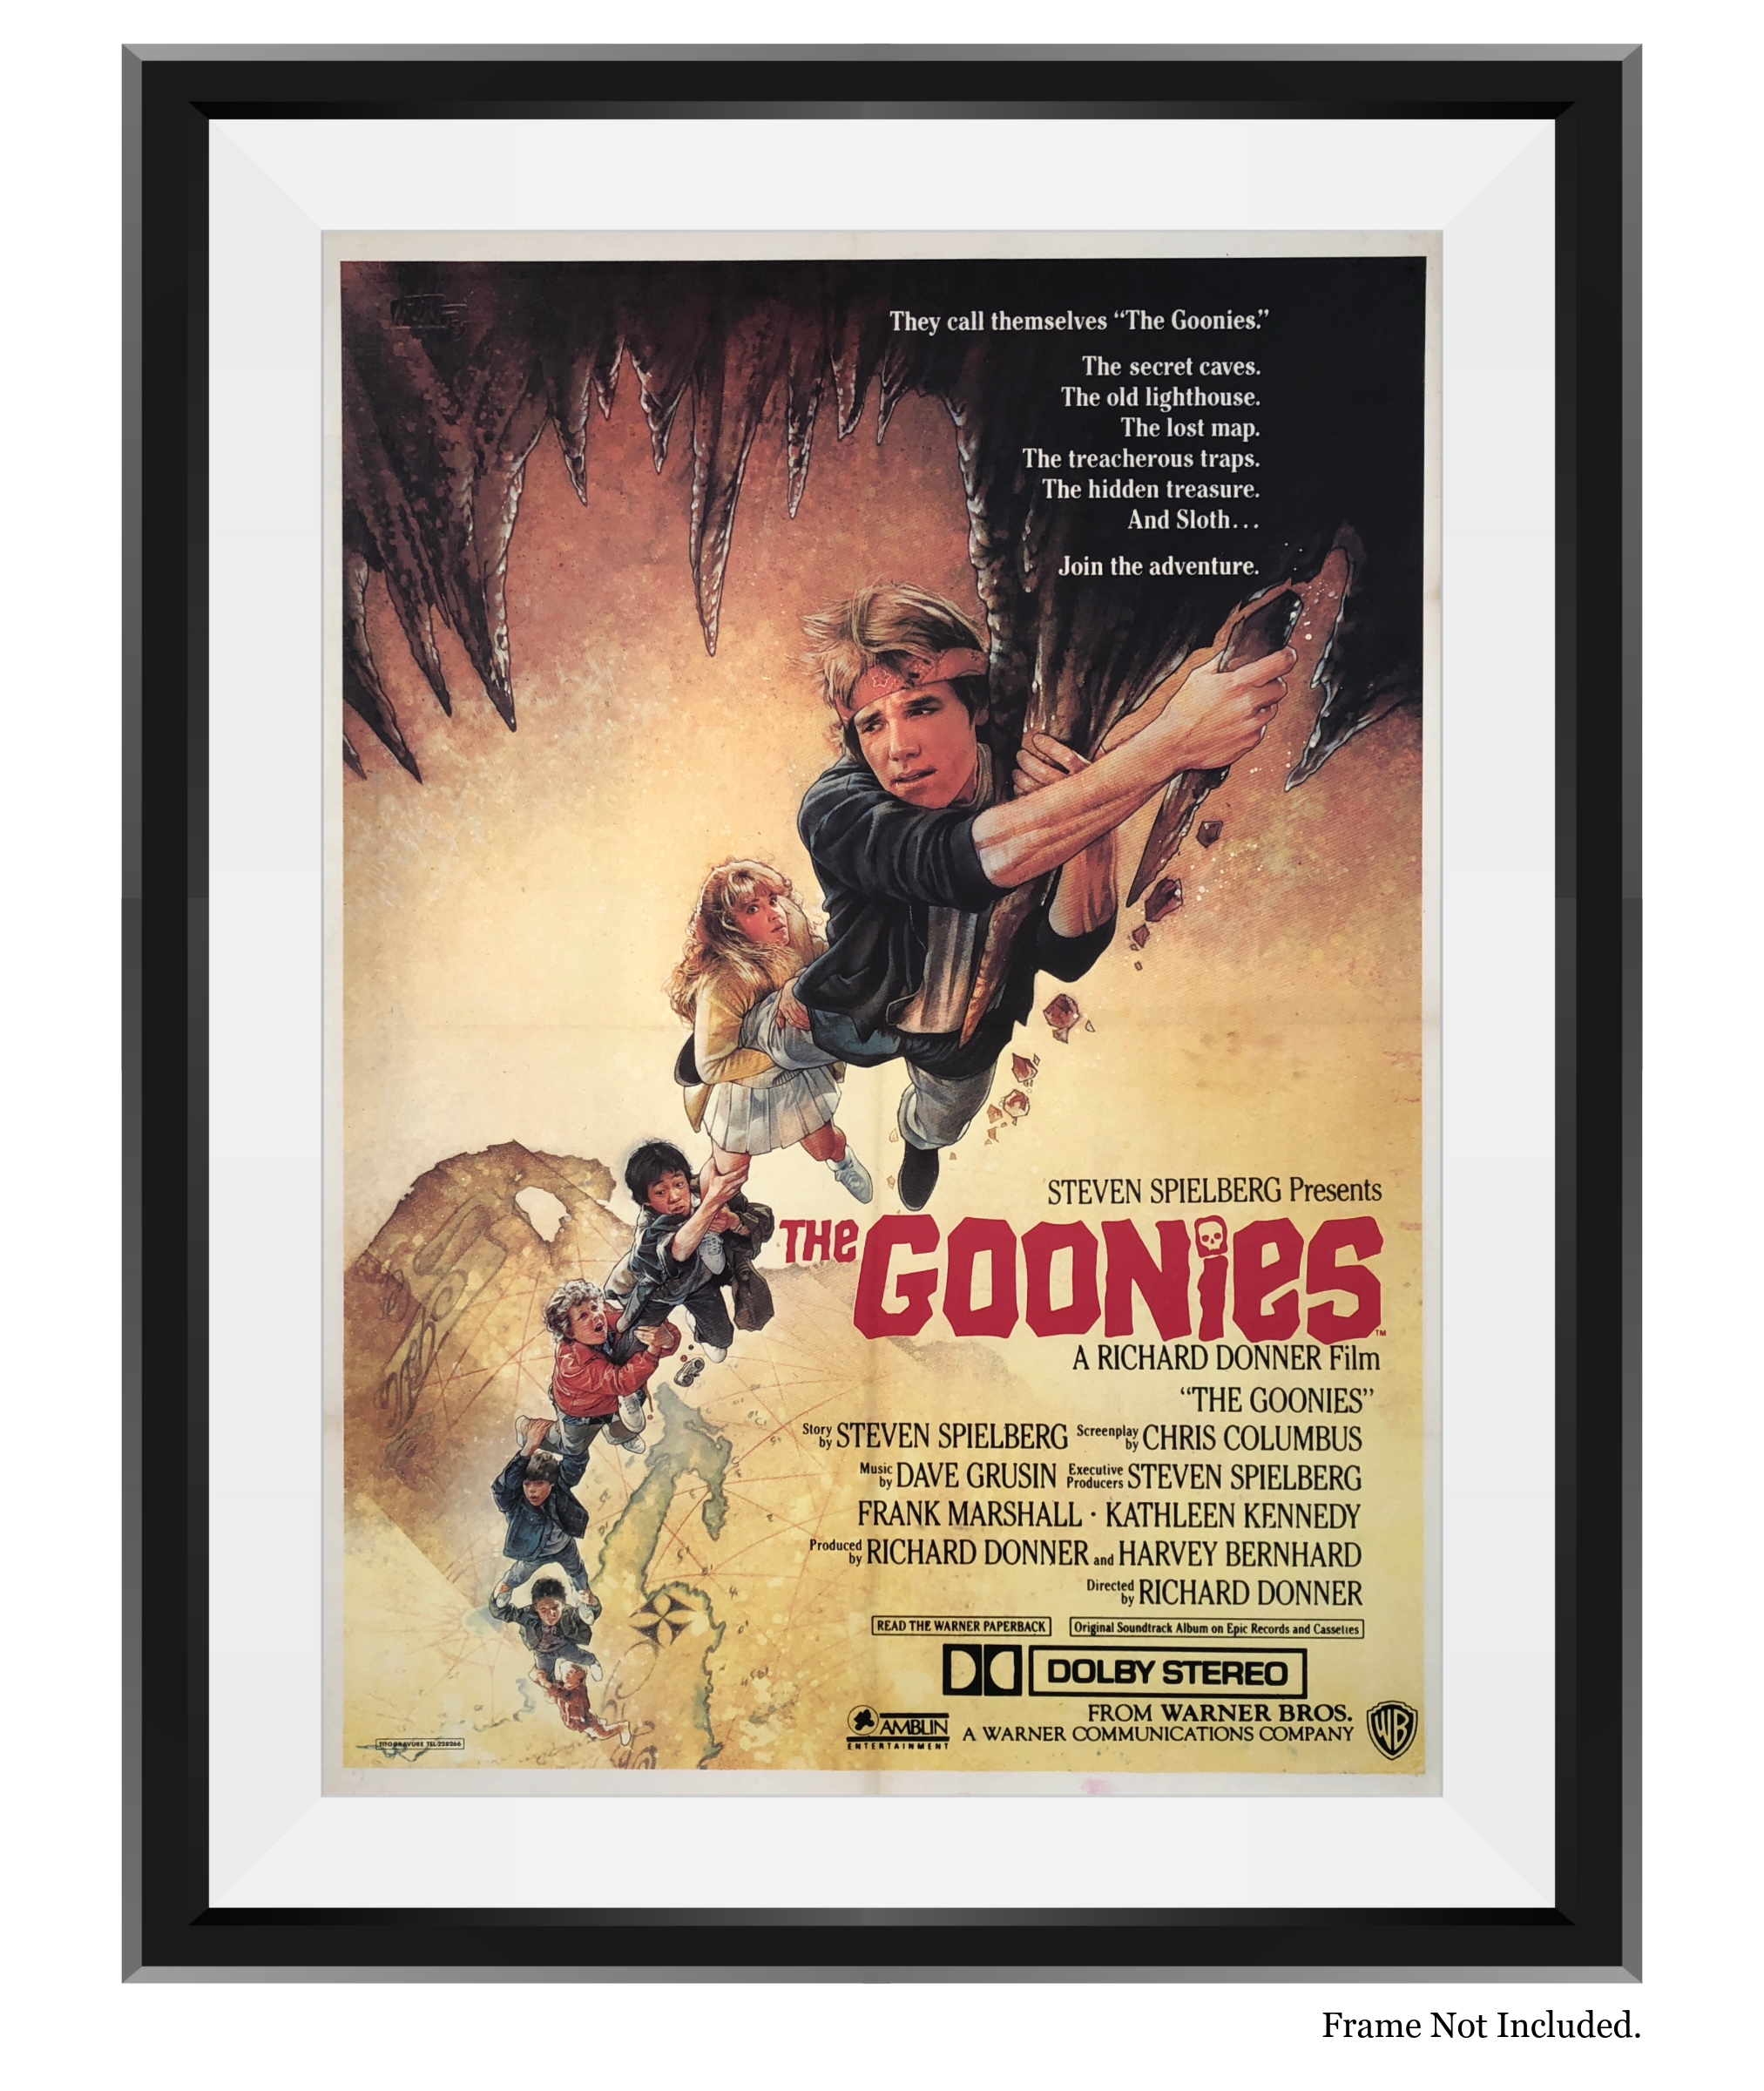 THE GOONIES (1985)